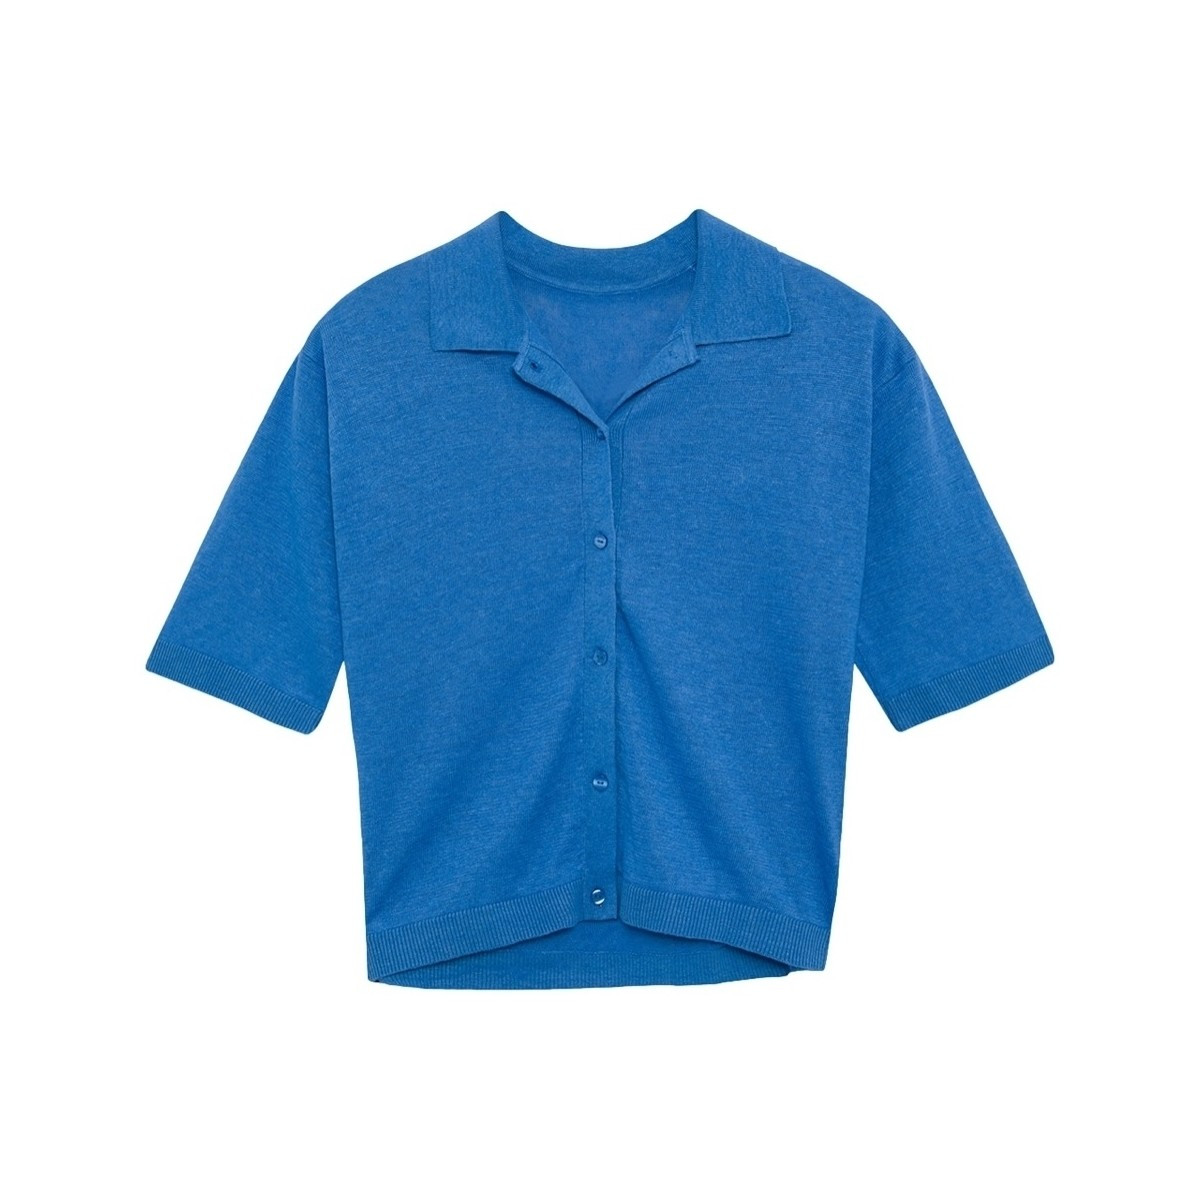 Ecoalf  Juniperalf Shirt - French Blue  Modrá